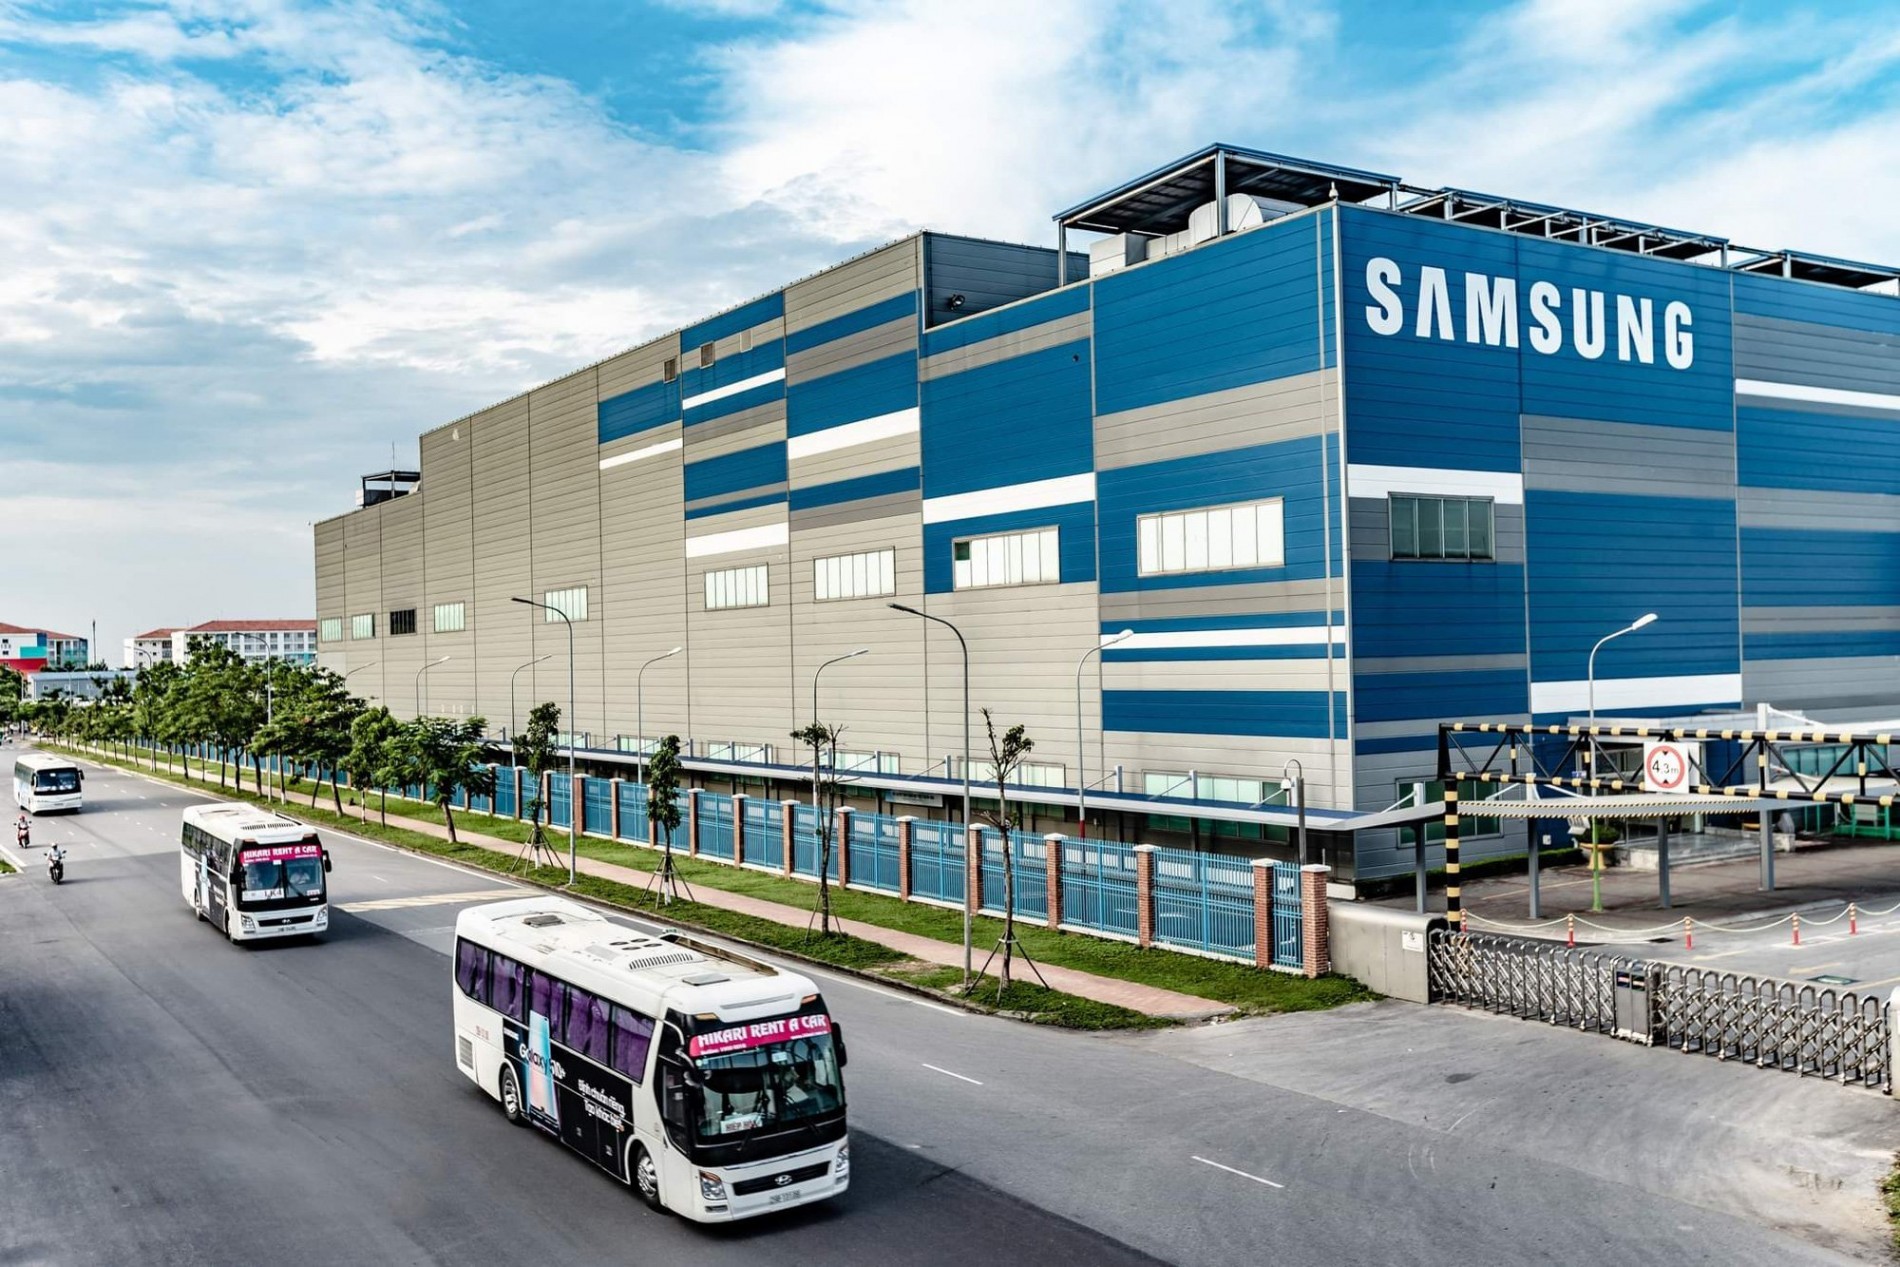 
Samsung đầu tư mạnh tay 1,2 tỷ USD vào Thái Nguyên
